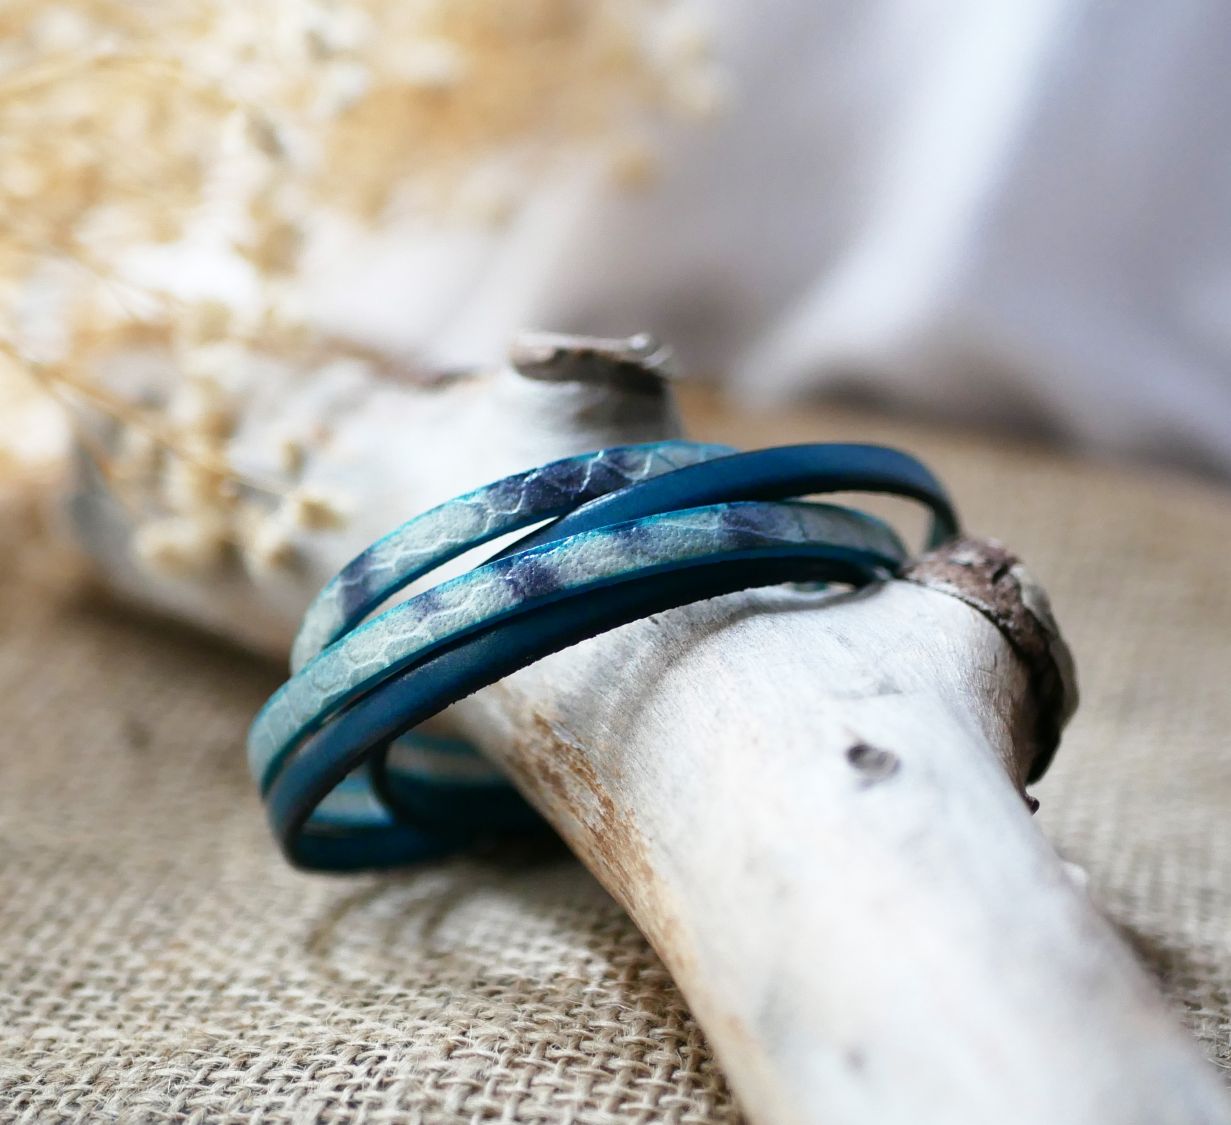 Bracelet double cuir peau de serpent bleu irisé et couleur au choix à personnaliser par gravure